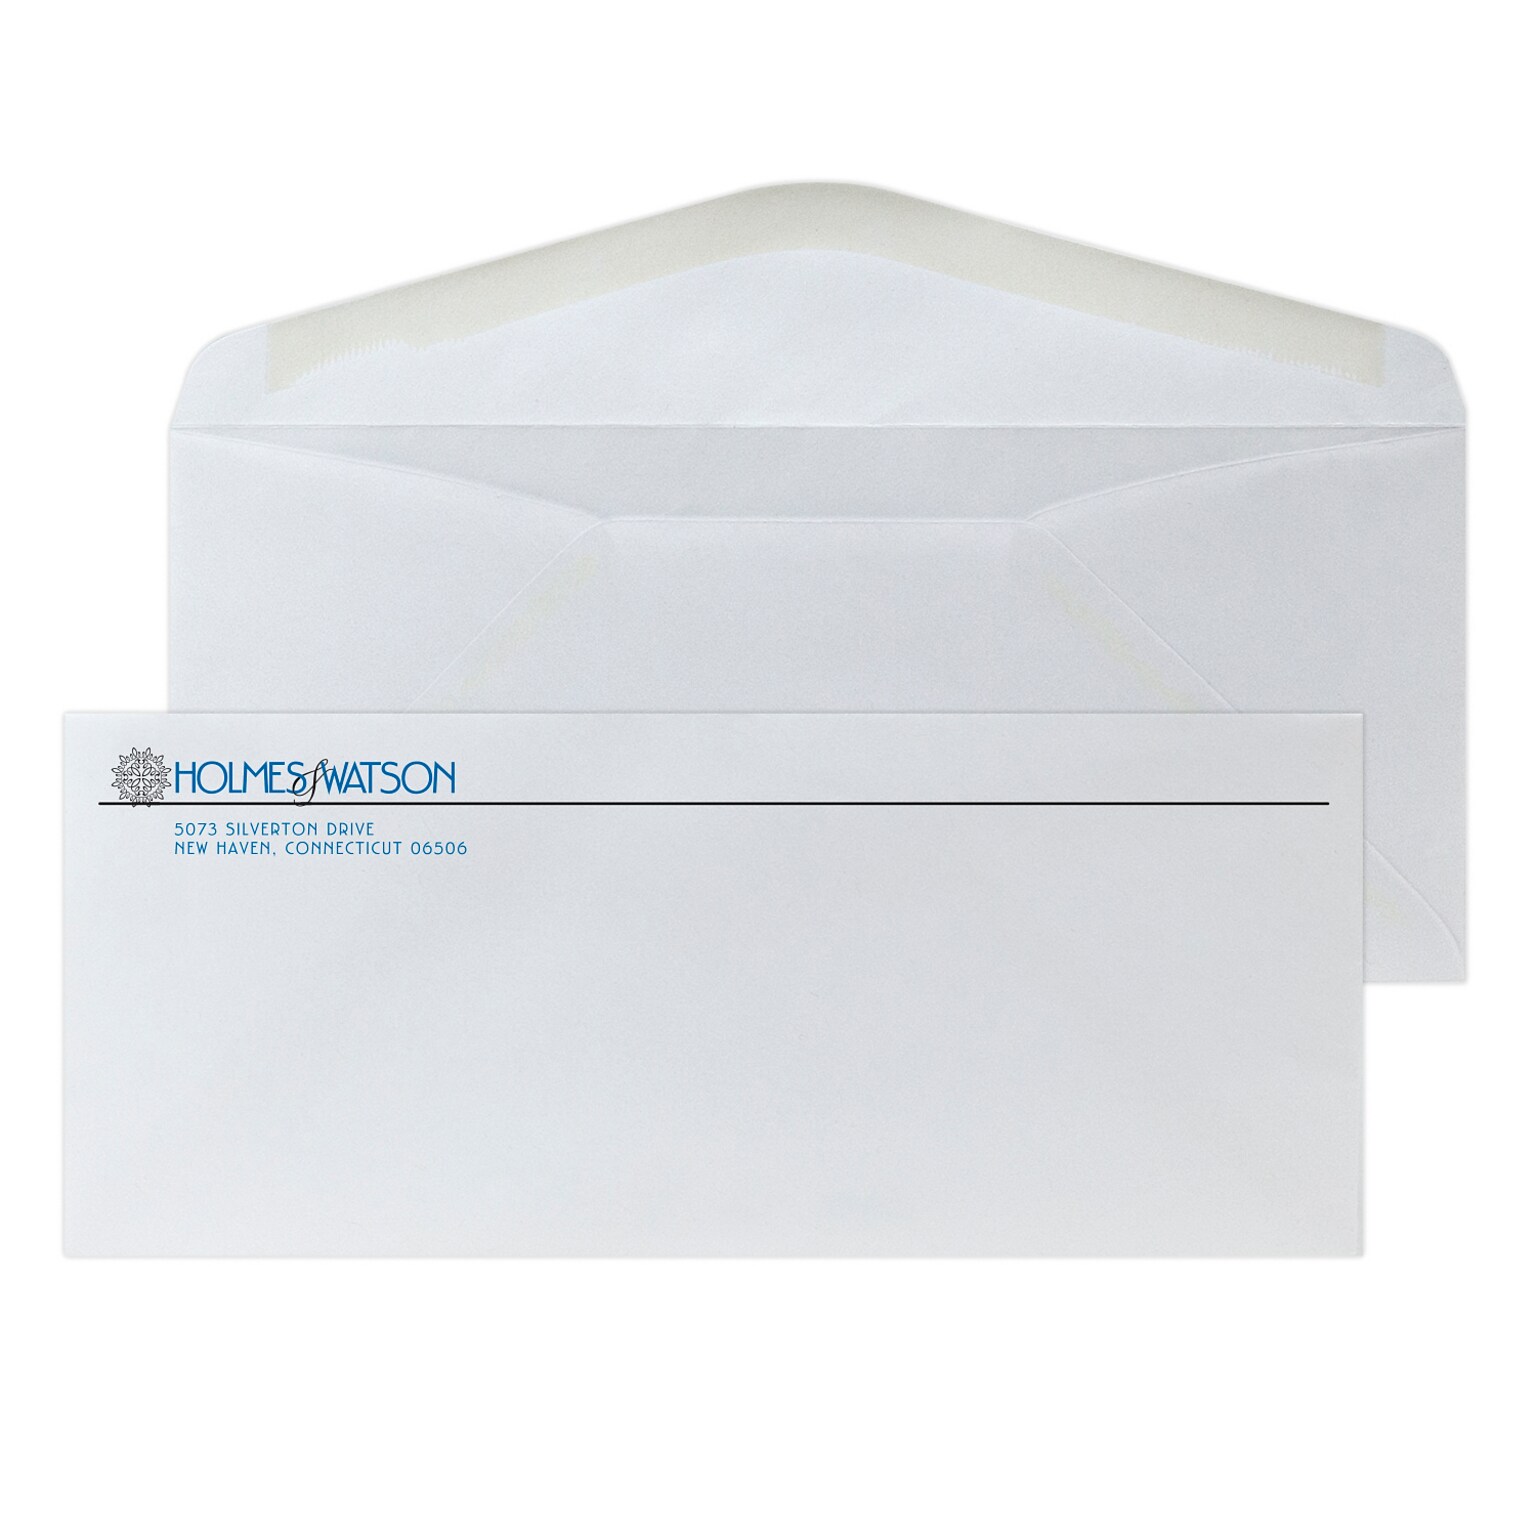 Custom #10 Standard Envelopes, 4 1/4 x 9 1/2, EarthFirst/SFI Logos, 24# White Recycled, 2 Standard Inks, 250 / Pack